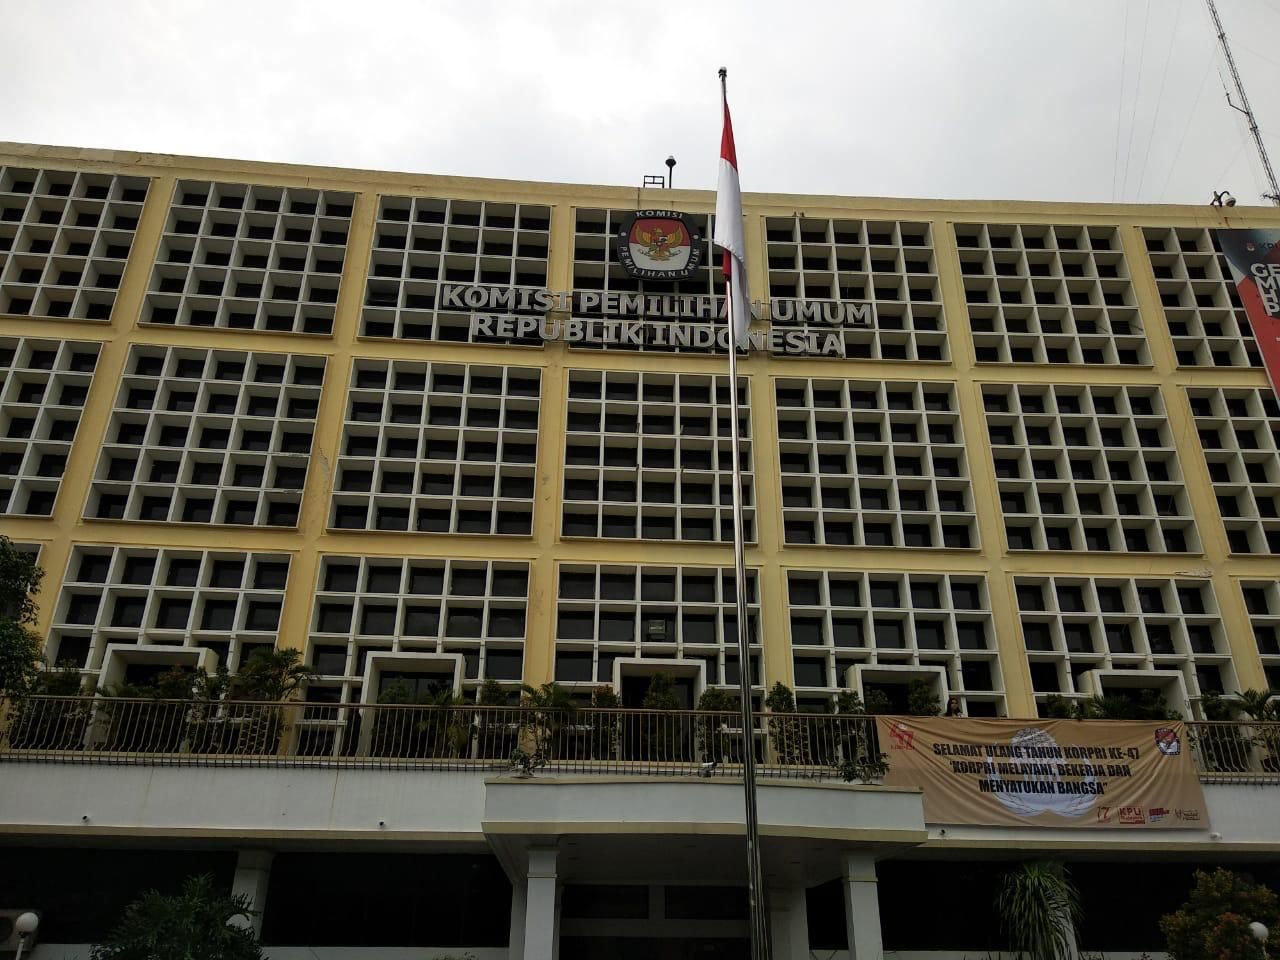 Sebanyak 32 Ribu Personel TNI/Polri Kawal Pengumuman Hasil Pemilu 2019